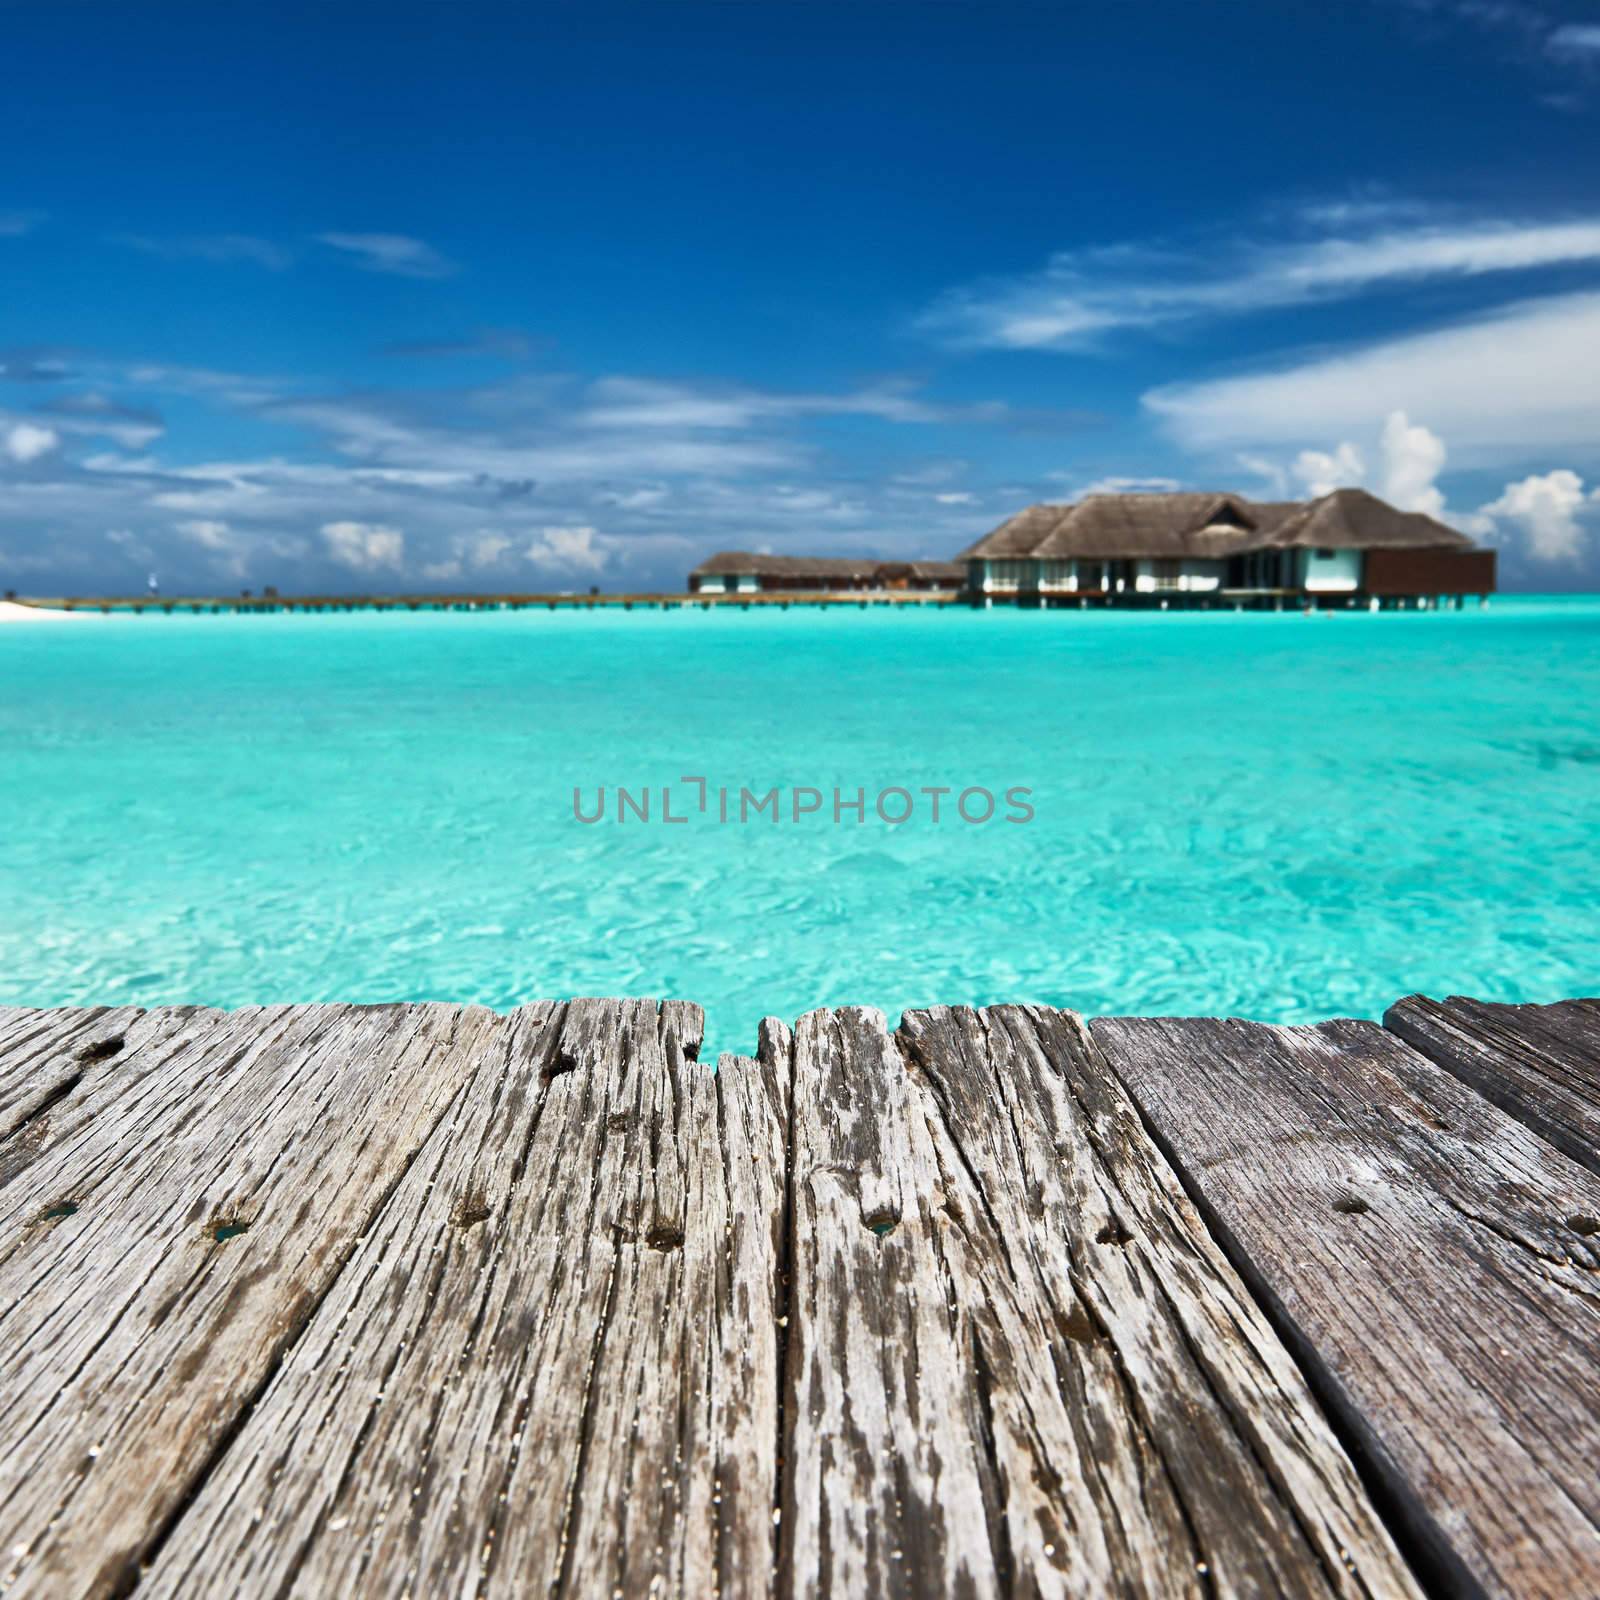 Beautiful beach with jetty at Maldives